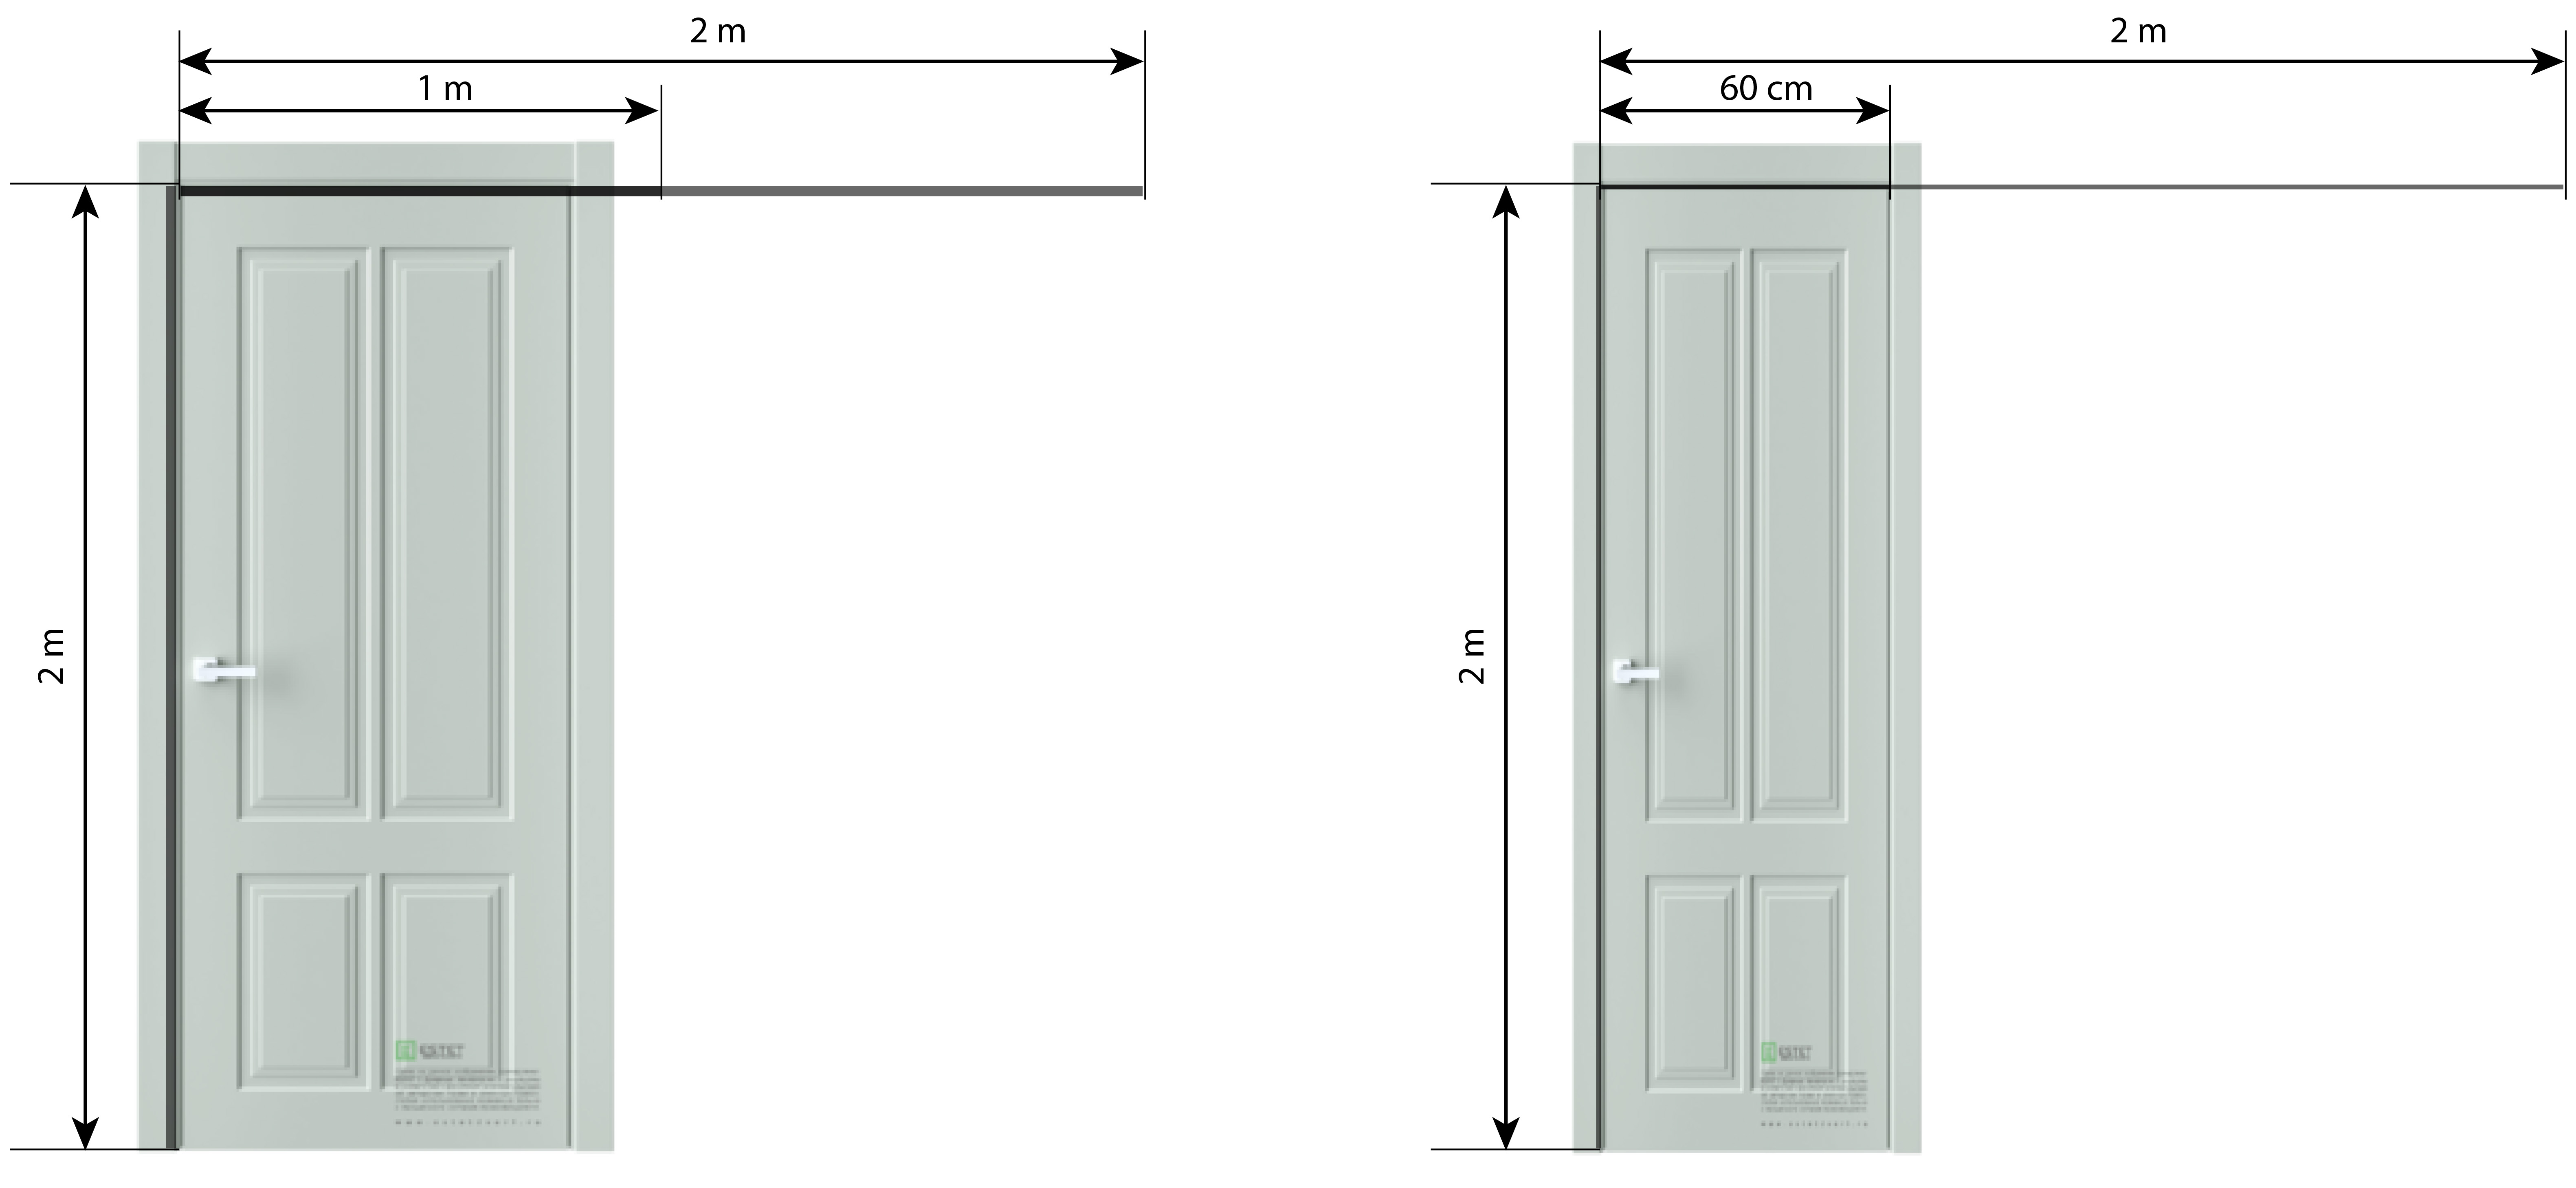 Сколько сантиметров дверь. Межкомнатные двери 2300 высотой. Высота проема для полотна 2300. Высота дверей 2.80 ширина 50см. Межкомнатные двери размер полотна 60 см ширина.